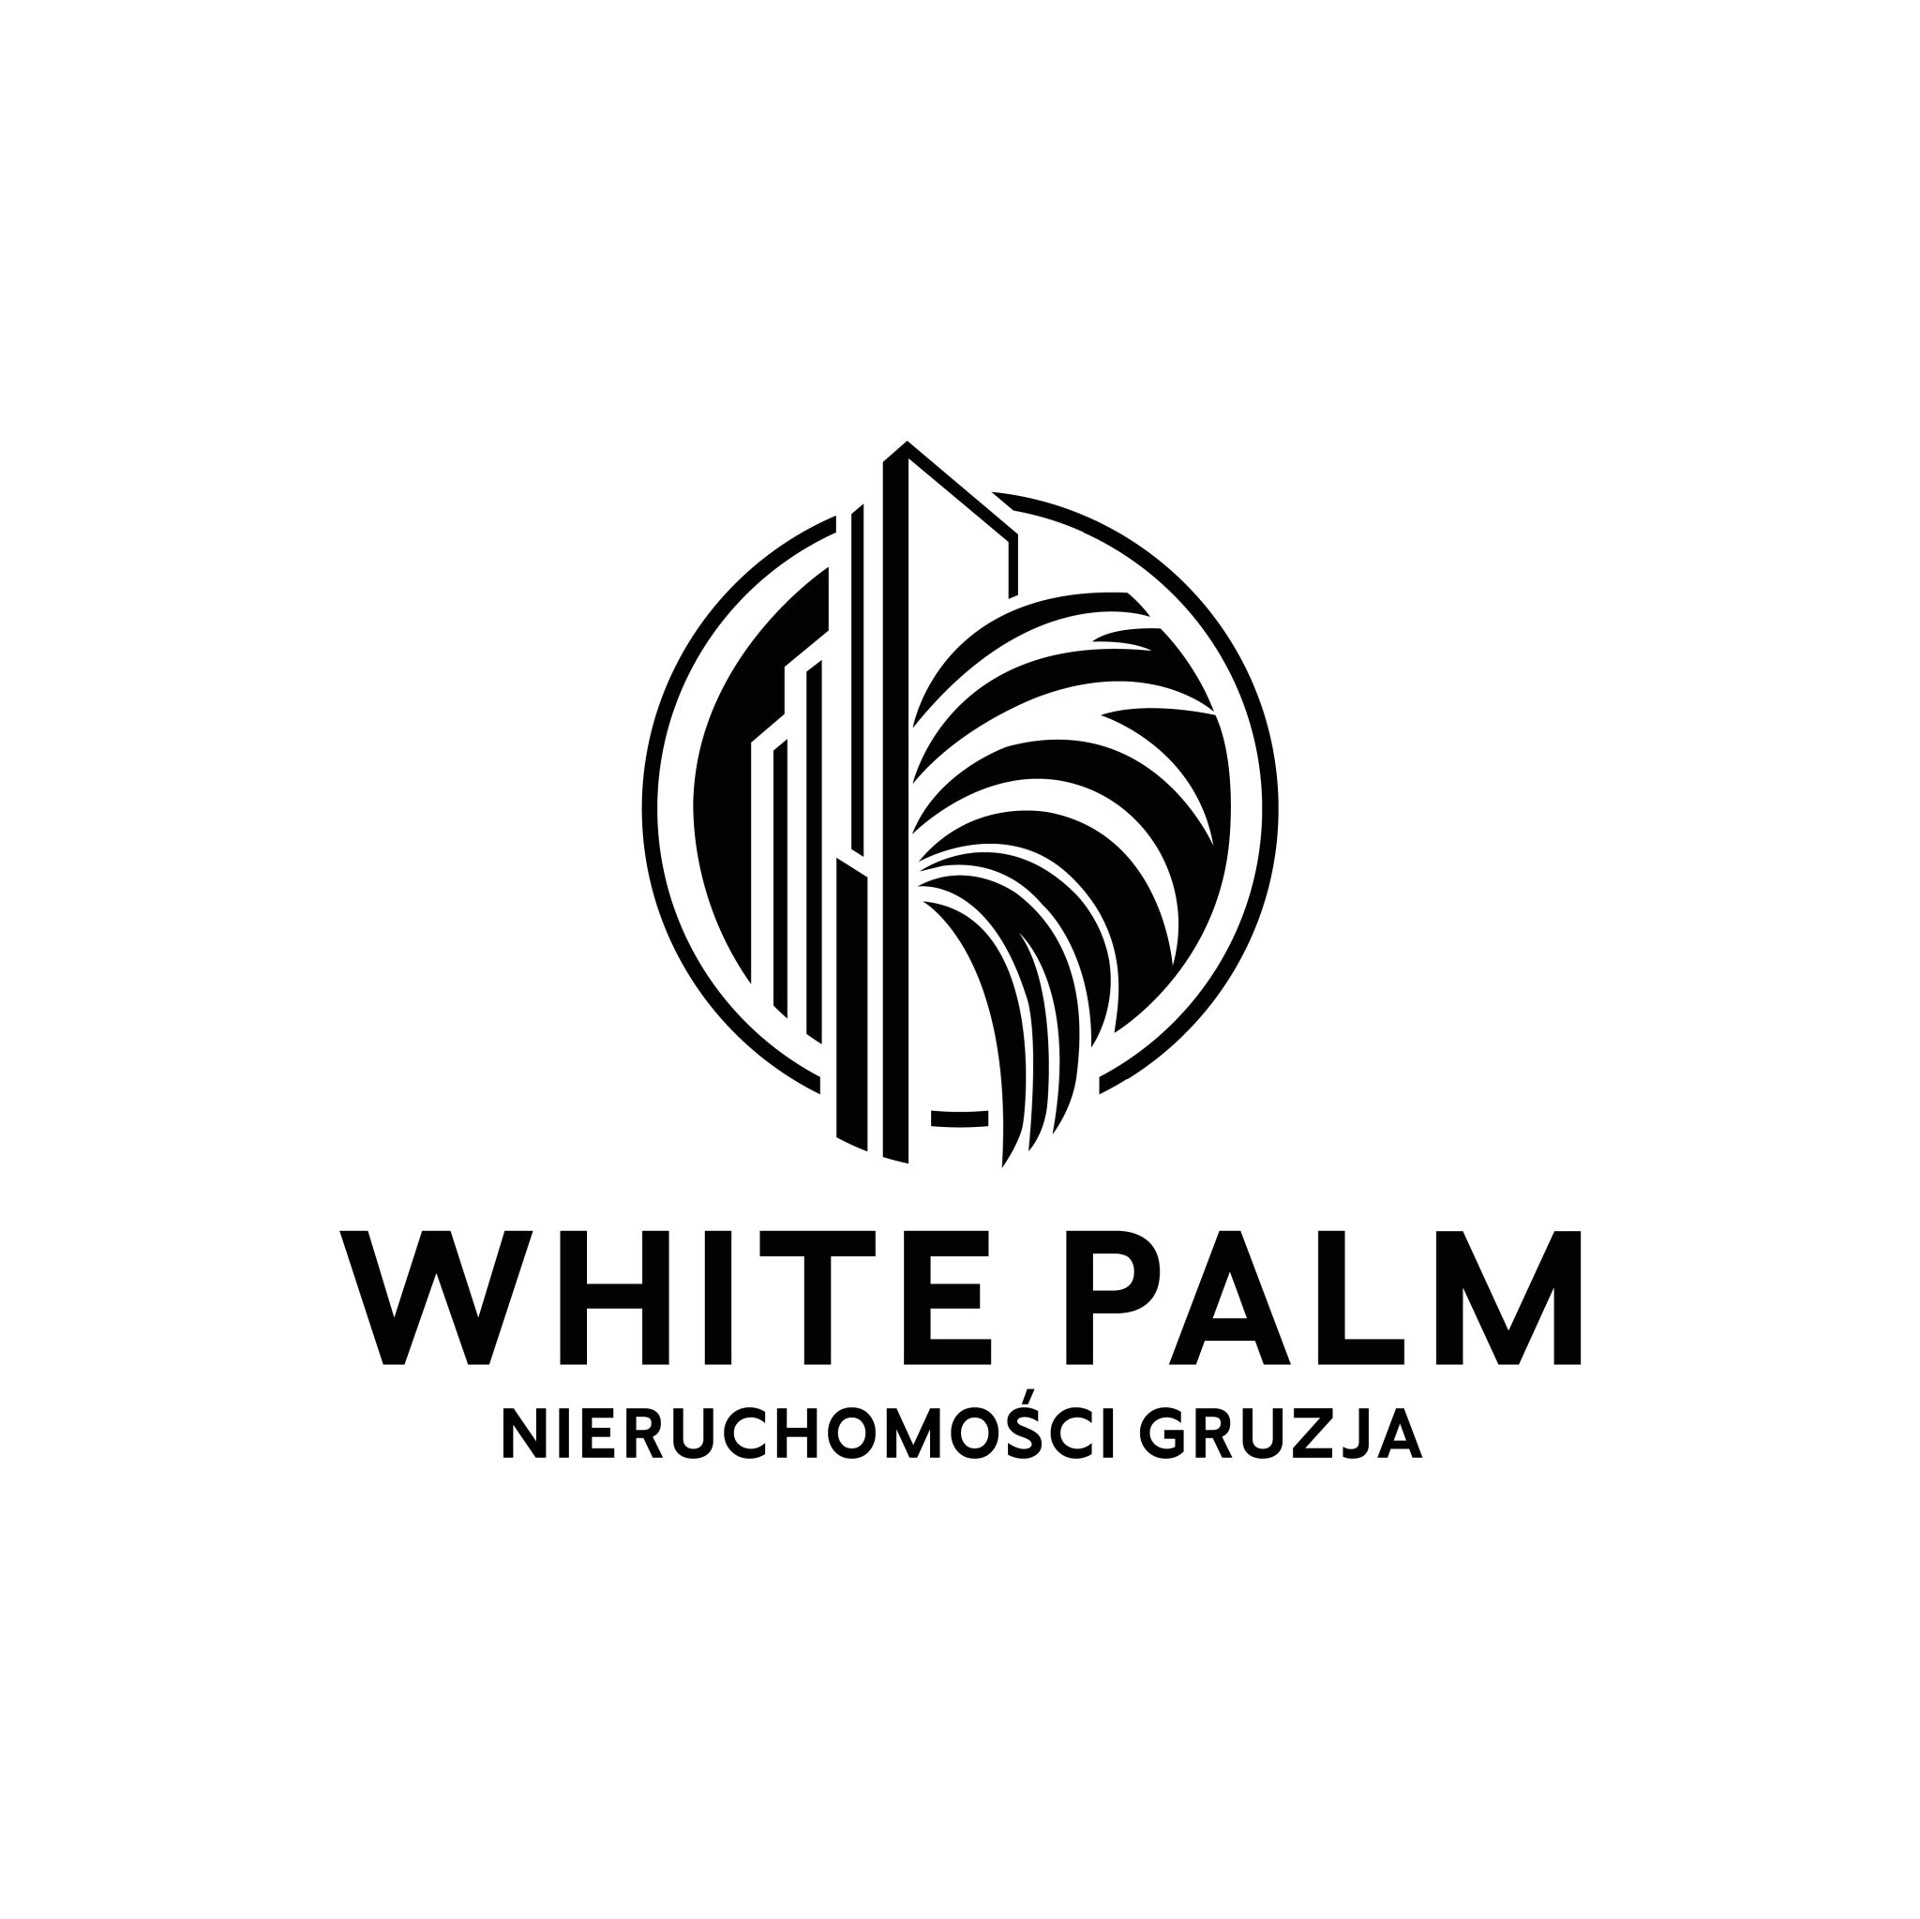 White Palm Nieruchomości Gruzja